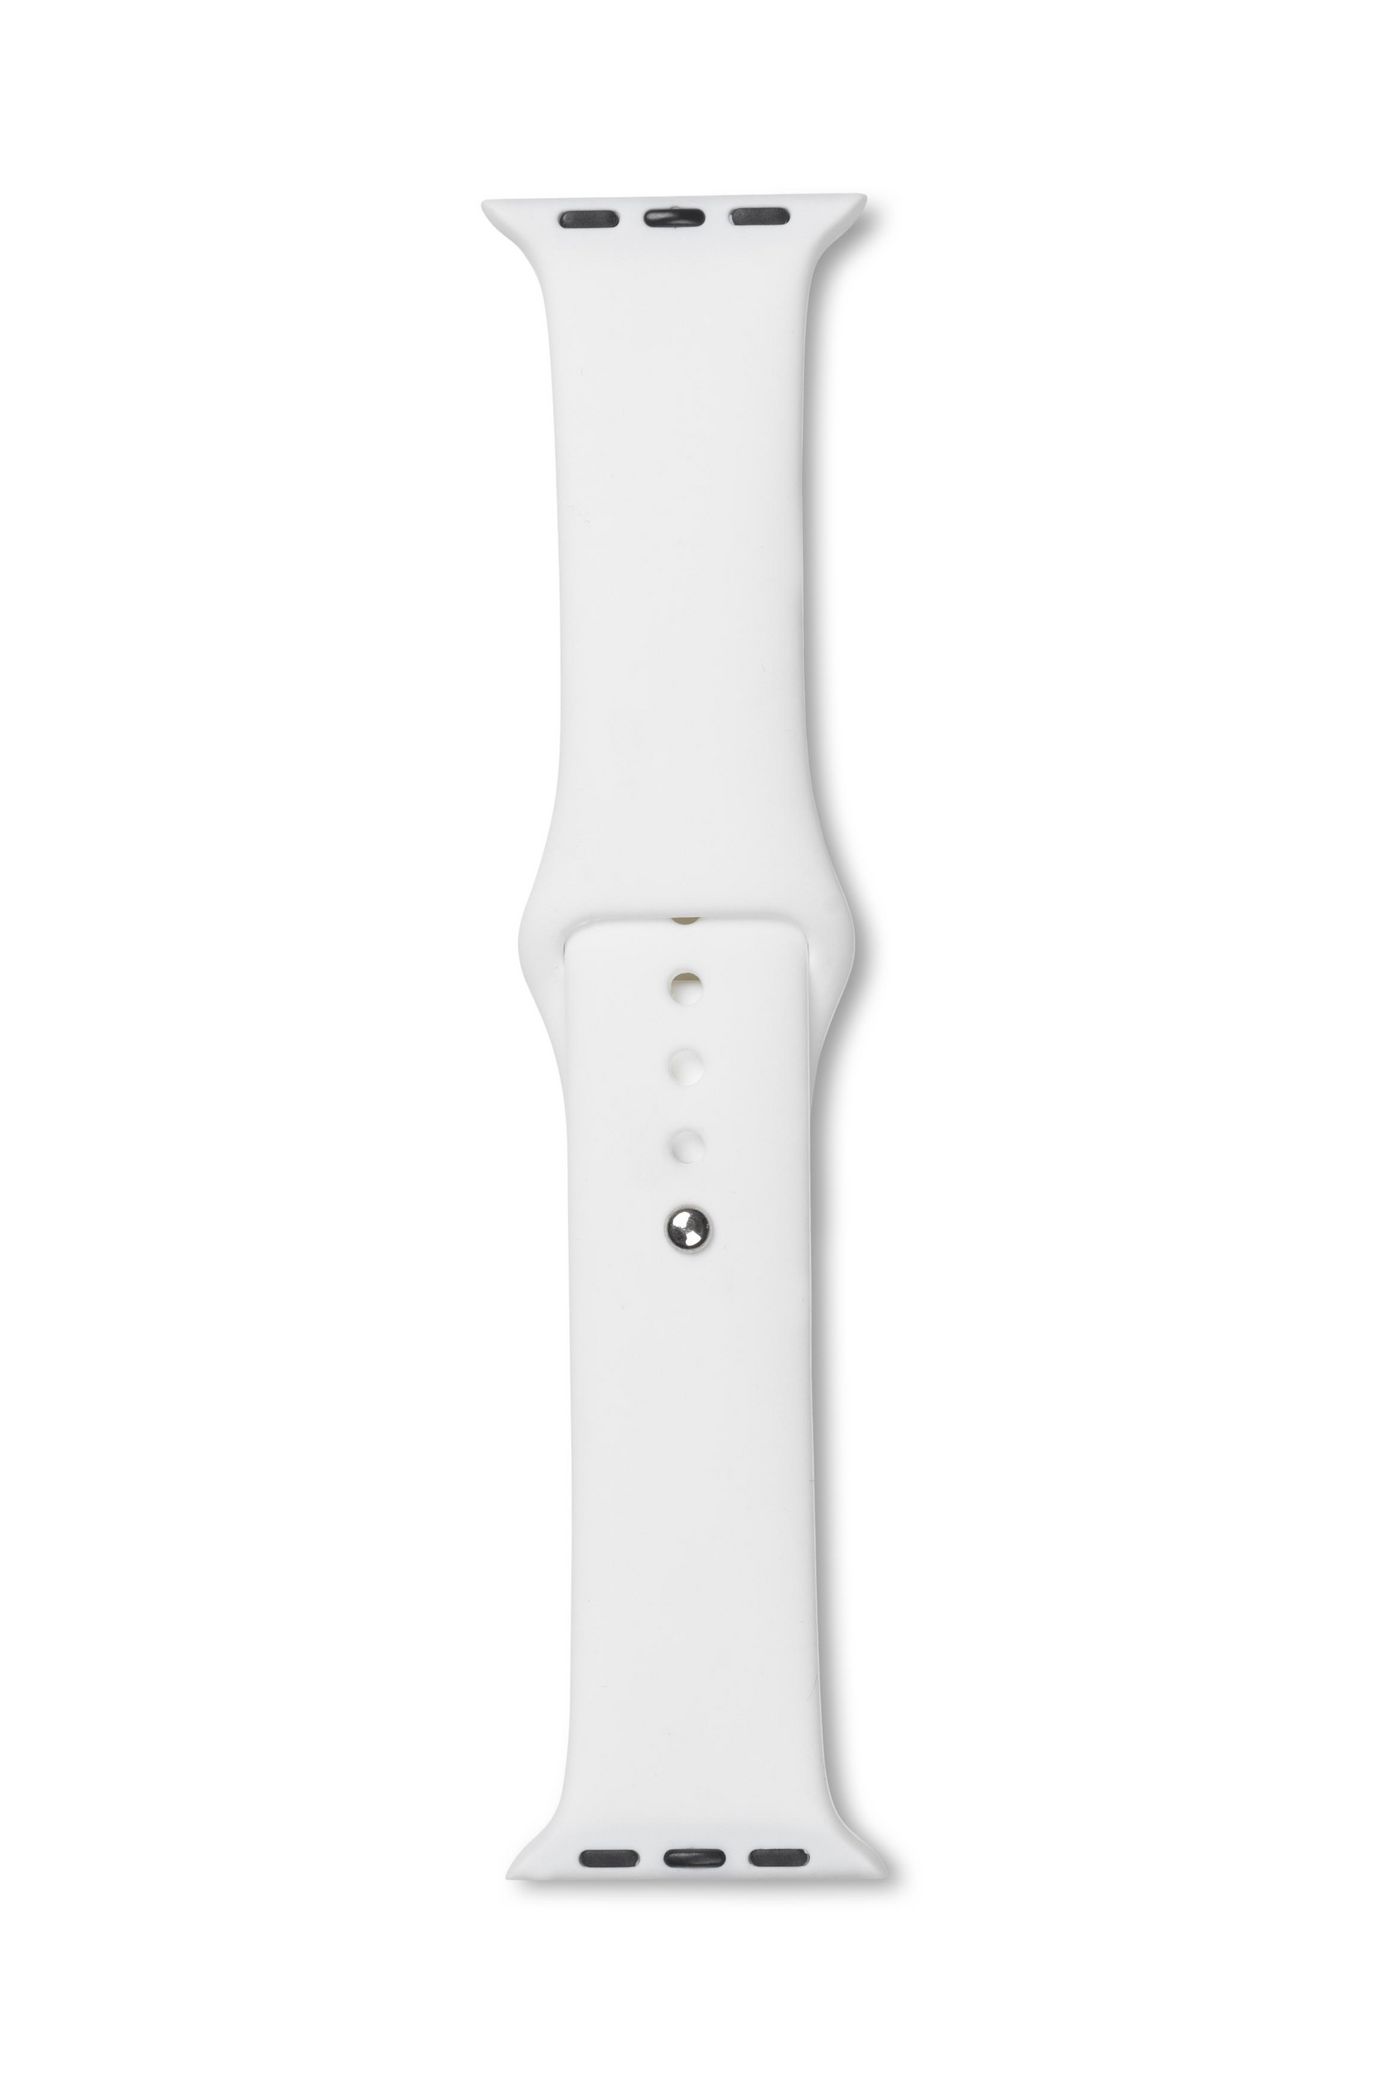 ESTUFF ES660161 - Band - Smartwatch - Weiß - Apple - Watch 44mm - Silikon (ES660161)